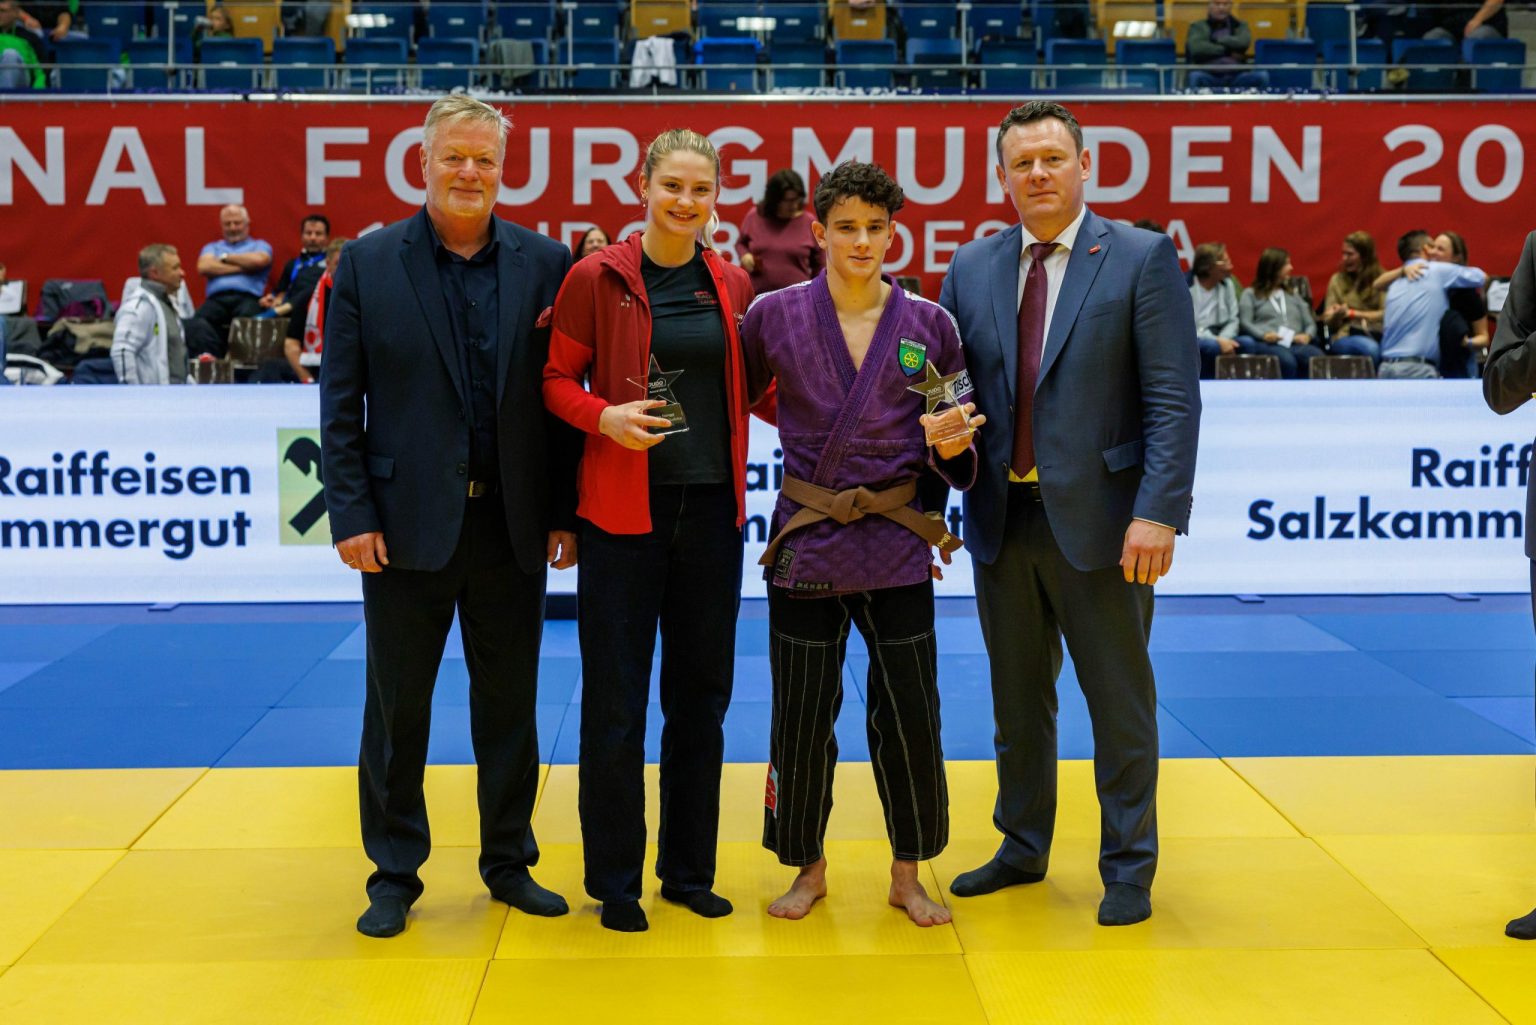 Marcus Auer Nachwuchs-Judoka des Jahres